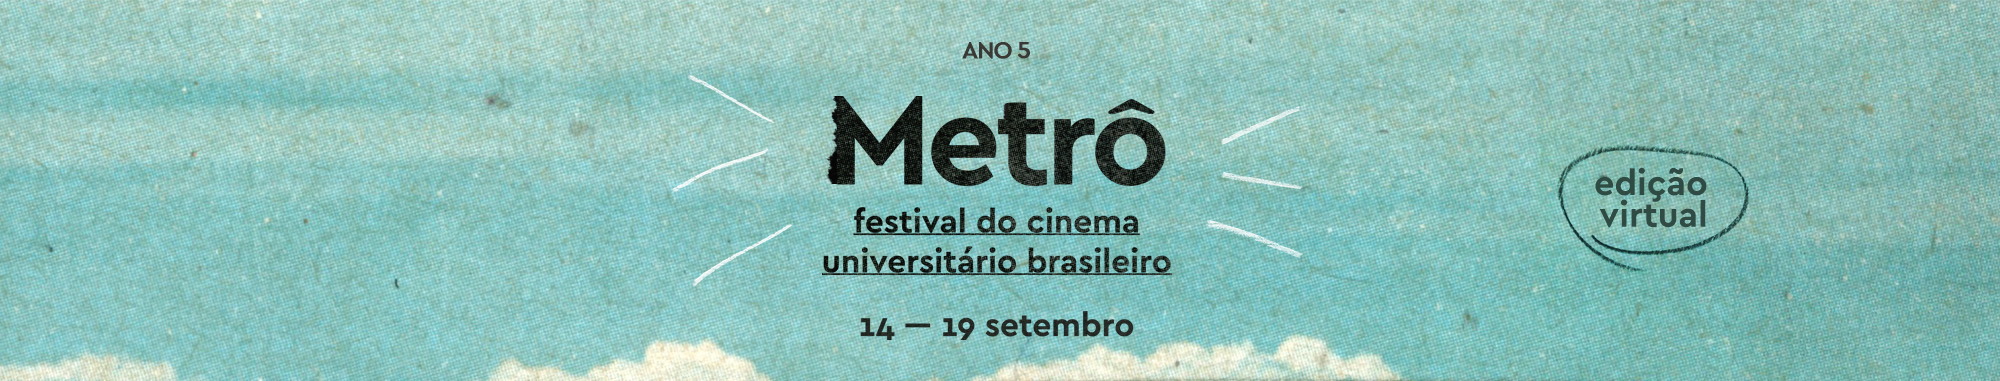 Metrô – Festival do Cinema Universitário Brasileiro inicia nesta terça-feira em formato virtual